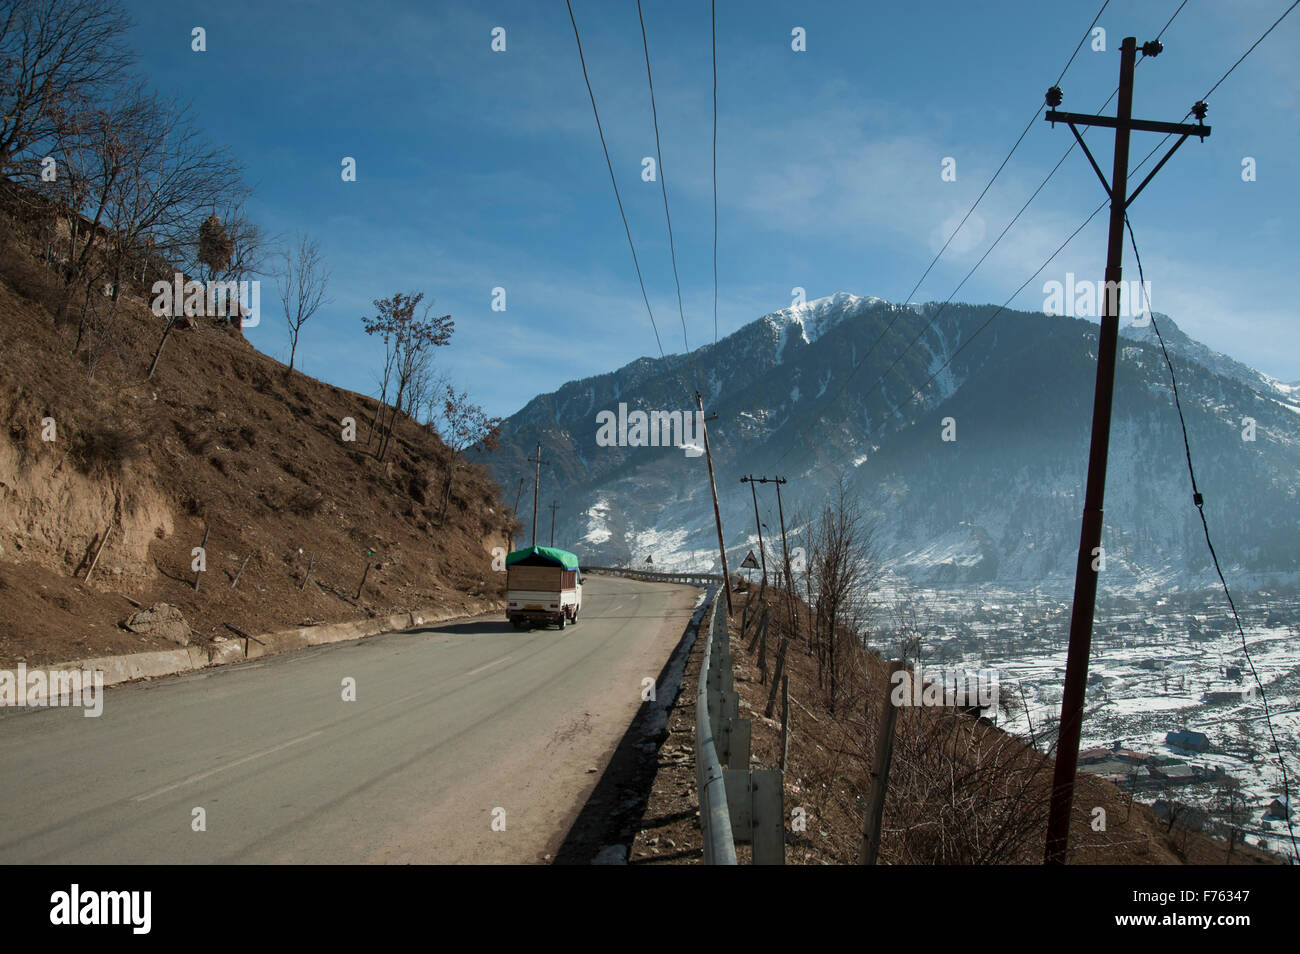 Straße nach Sonmarg von Srinagar Kashmir Indien Asien Stockfoto